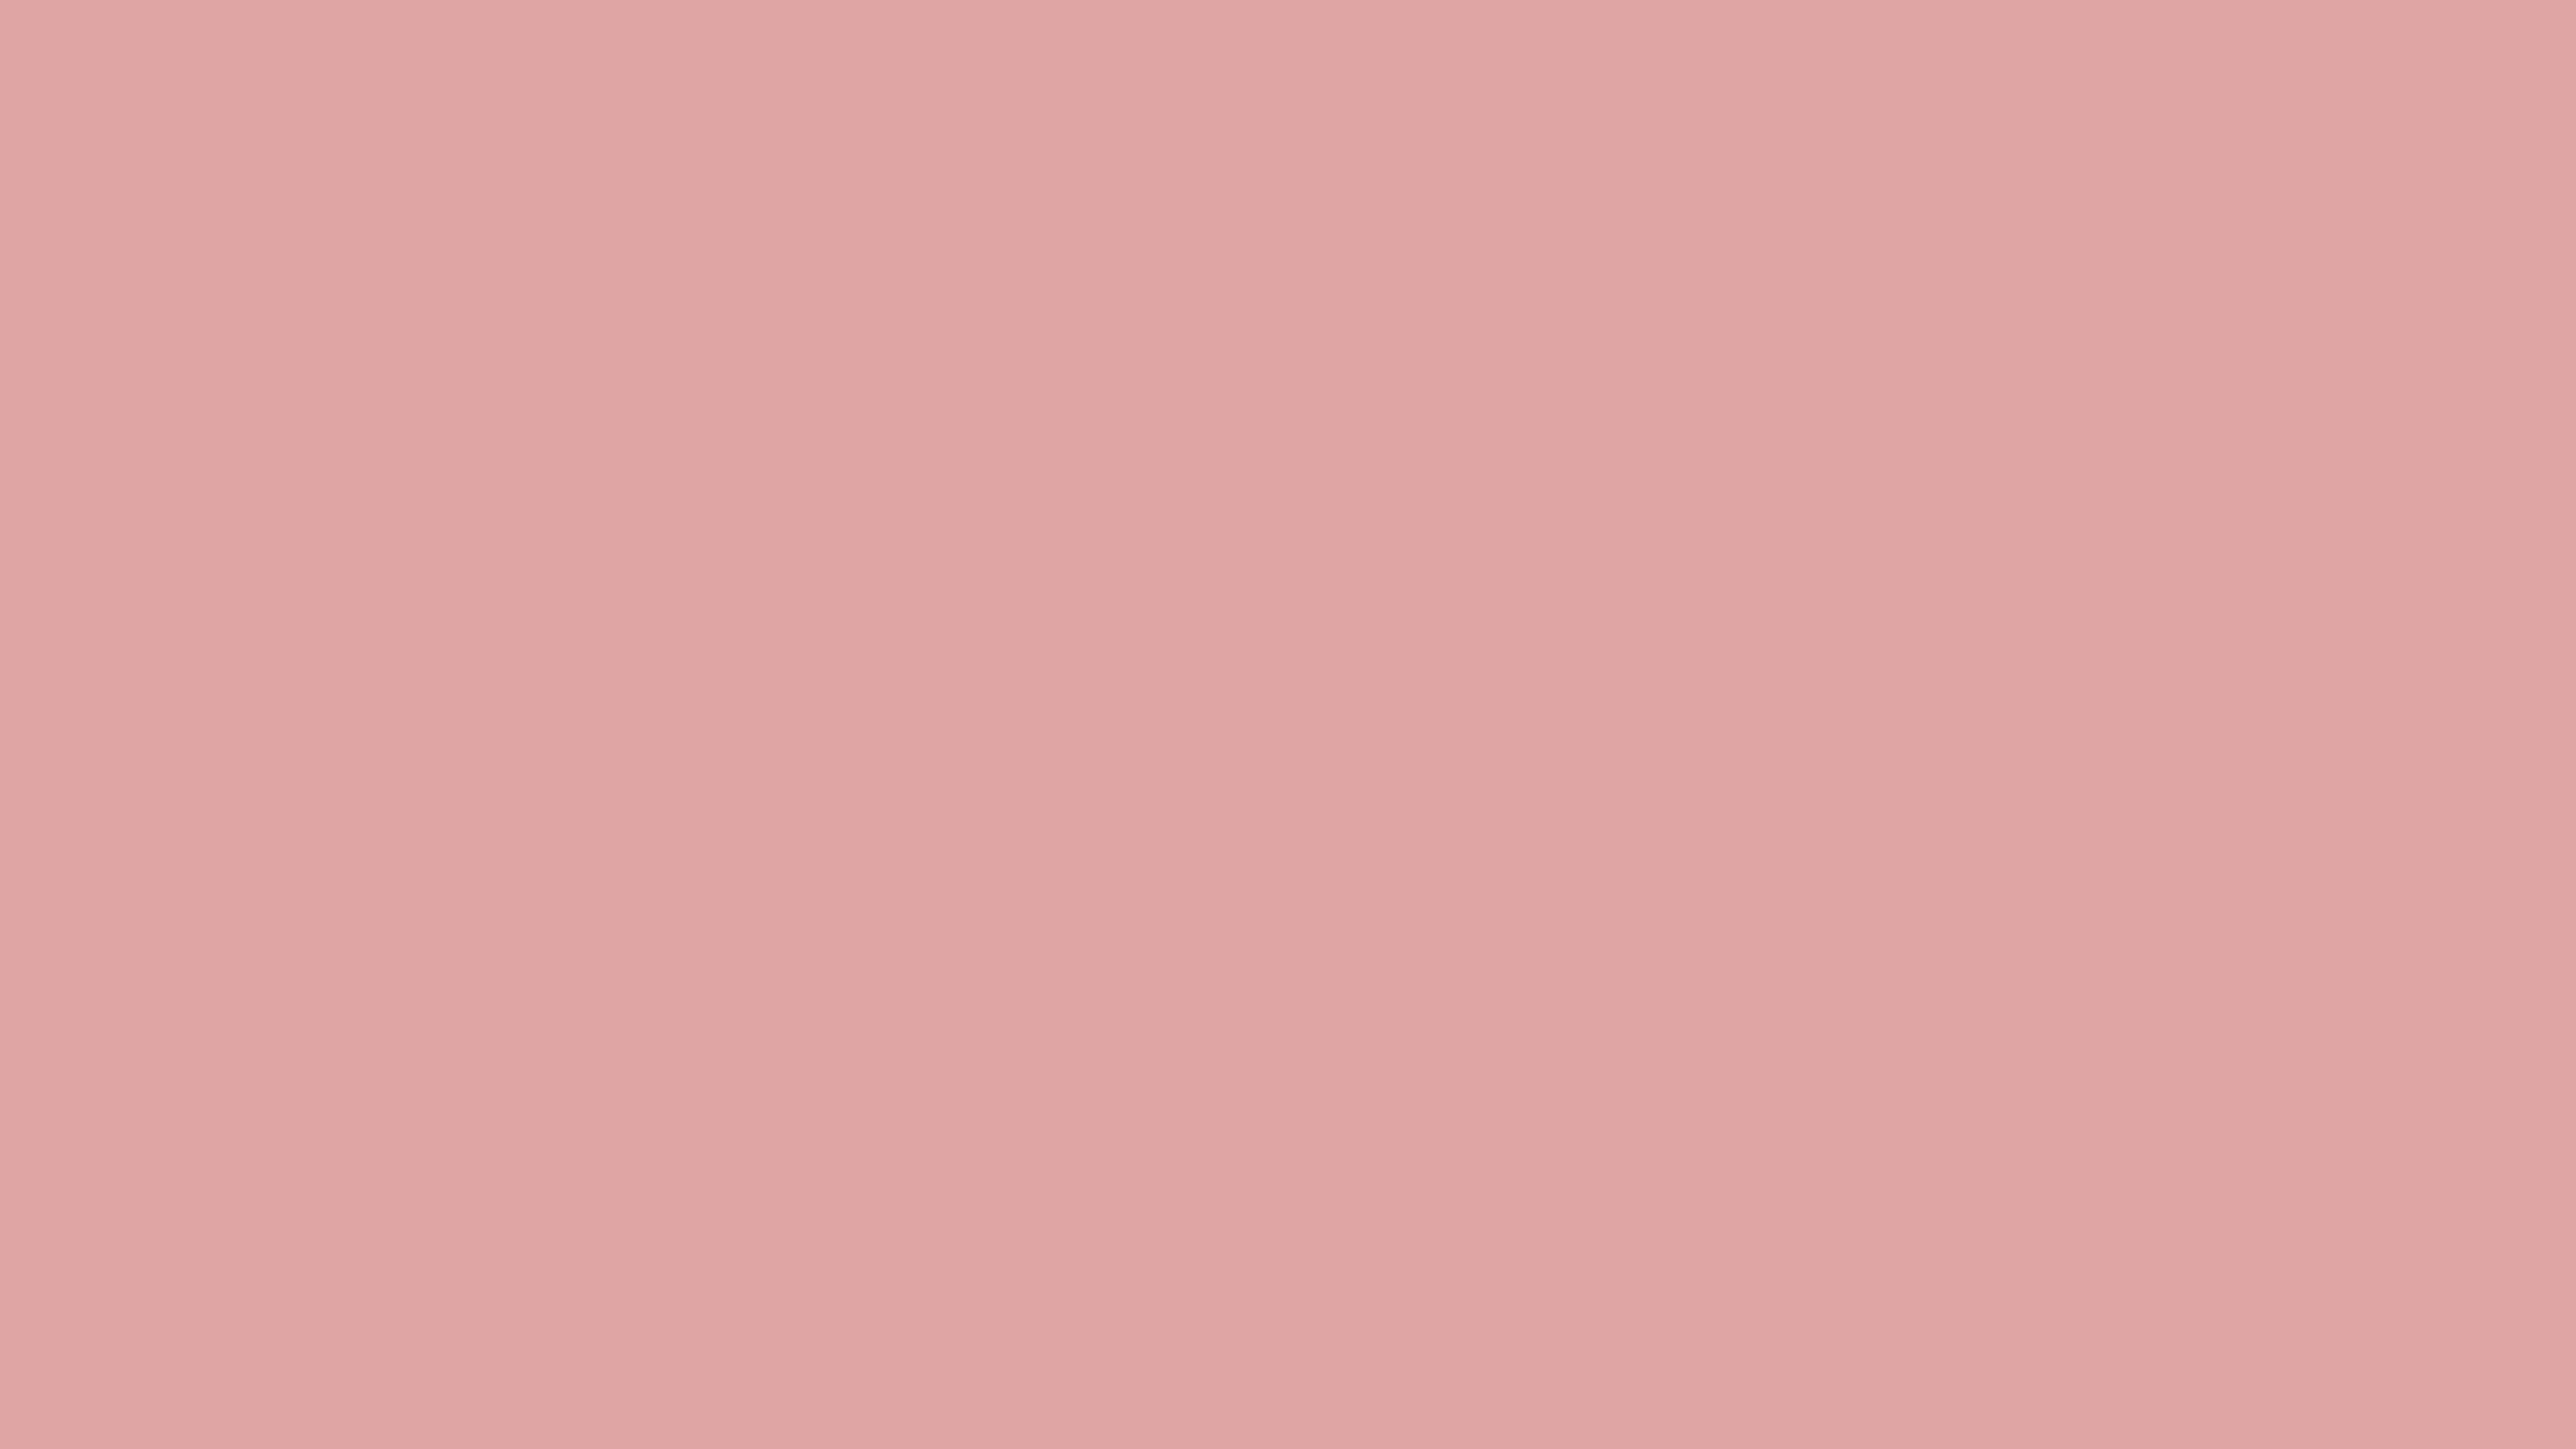 Ảnh nền đơn sắc Pastel Pink nước hồng nhạt với độ phân giải 7680x4320 sẽ khiến cho màn hình của bạn trở nên sảng khoái và ngọt ngào hơn. Sự thanh lịch của nó sẽ tạo ra một không gian hài hòa và nhẹ nhàng cho mắt khi làm việc hay giải trí.